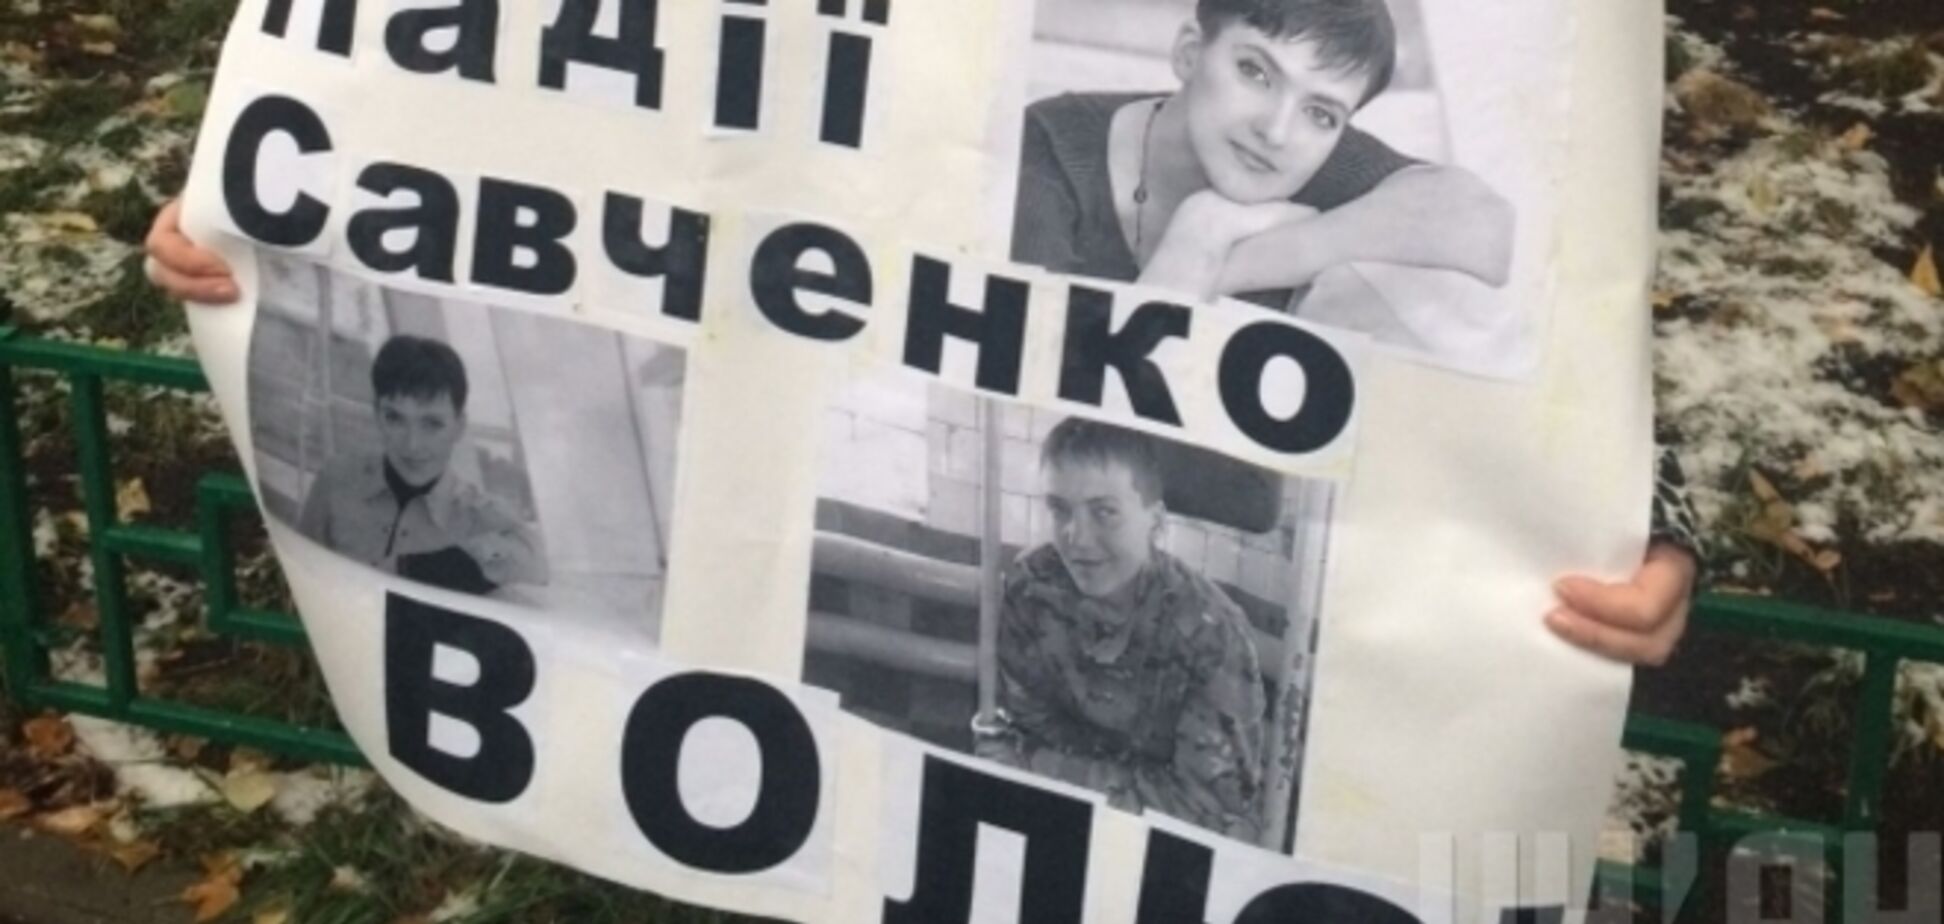 В Москве прошли пикеты в поддержку украинской летчицы Савченко: опубликованы фото